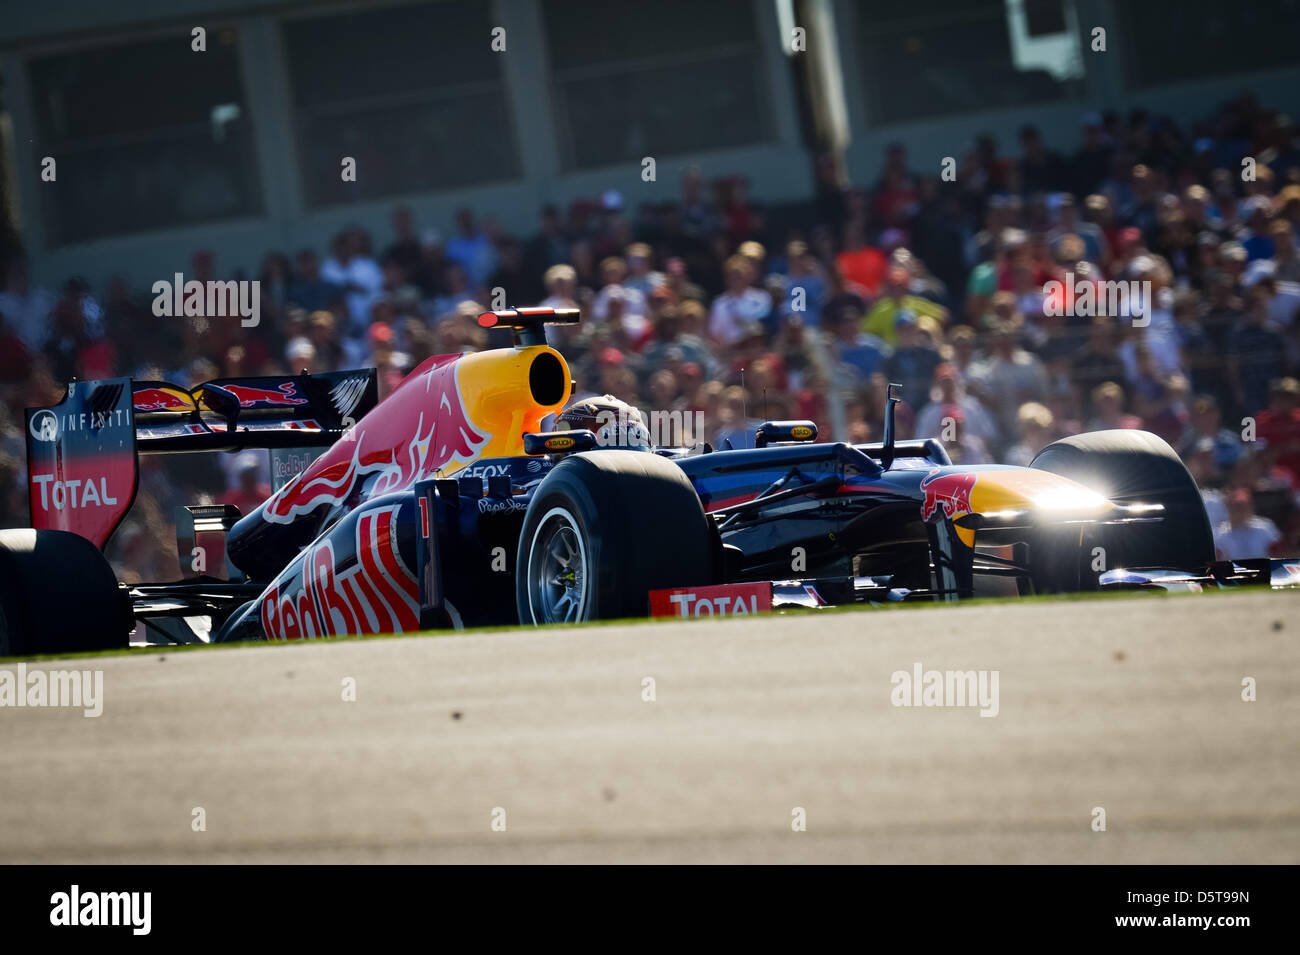 Deutsche Formel1-Fahrer Sebastian Vettel von Red Bull steuert sein Auto während der Formel 1 United States Grand Prix auf dem Circuit of The Americas in Austin, Texas, USA, 18. November 2012. Foto: David sollte/Dpa +++(c) Dpa - Bildfunk +++ Stockfoto